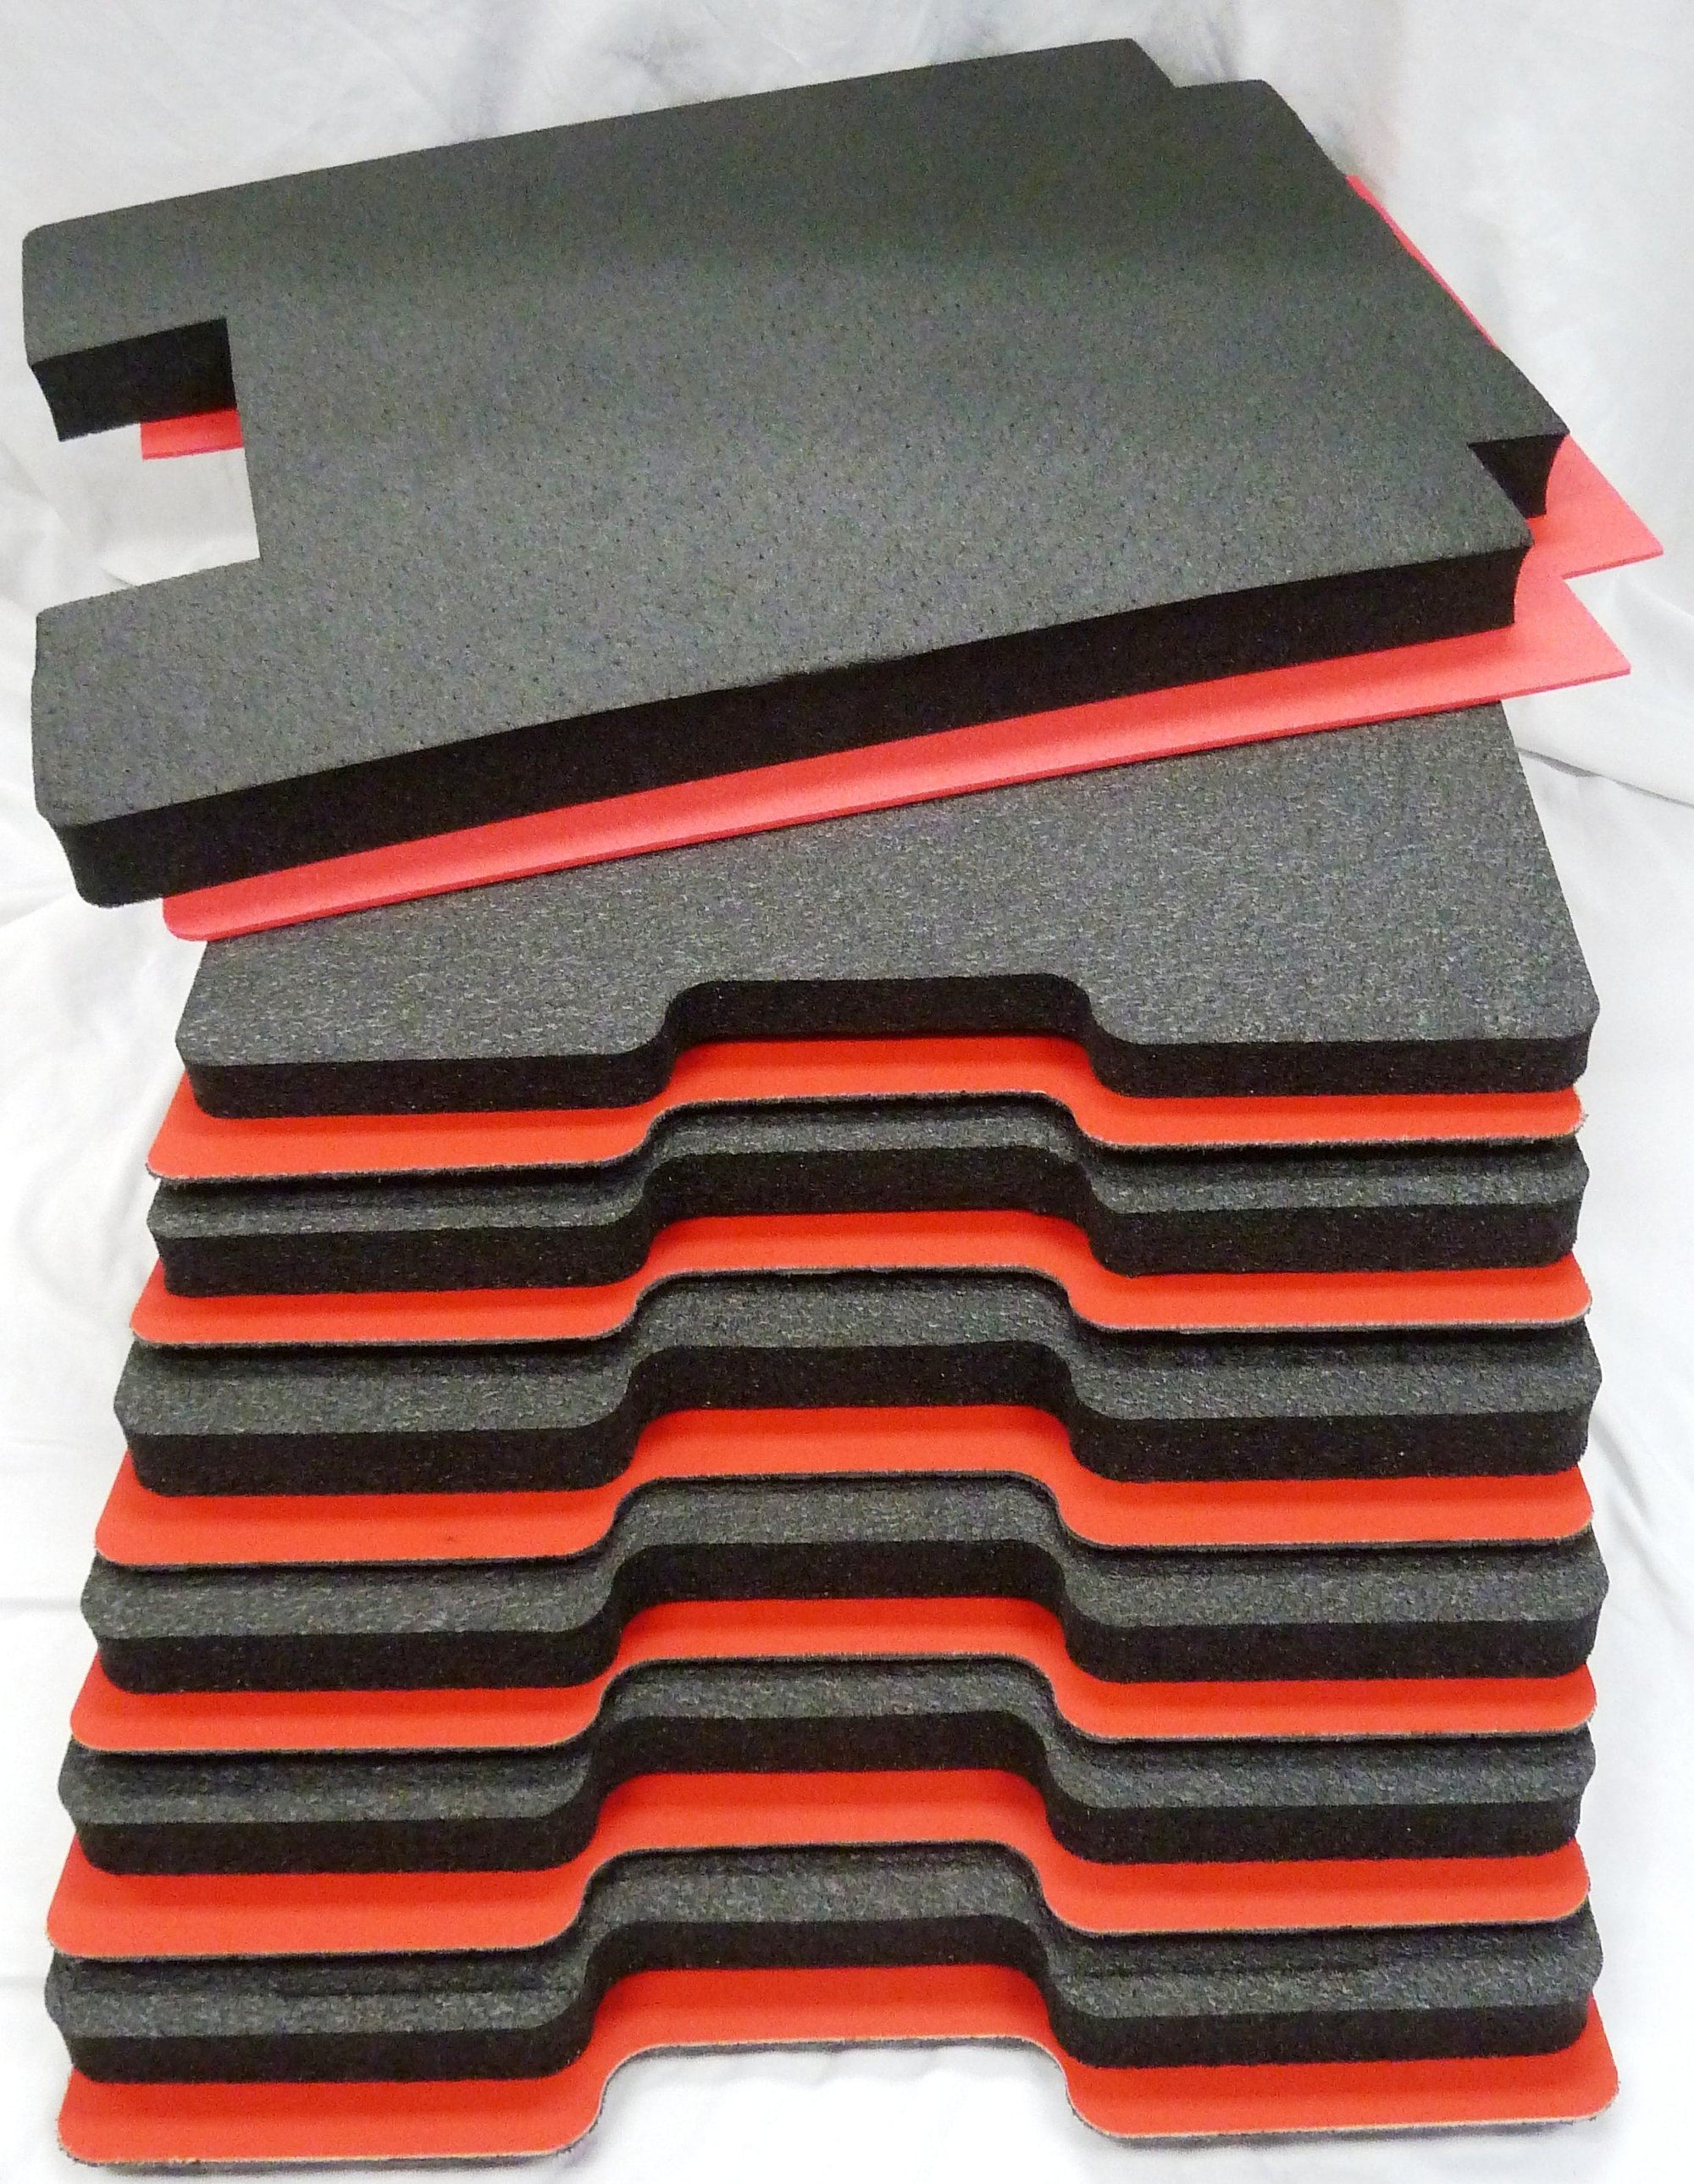 Pelican 1560 Tool Foam Kit (Set of 6 Black Foam Inserts, 5 Red Plastic  Backers & One Red Bottom Foam)